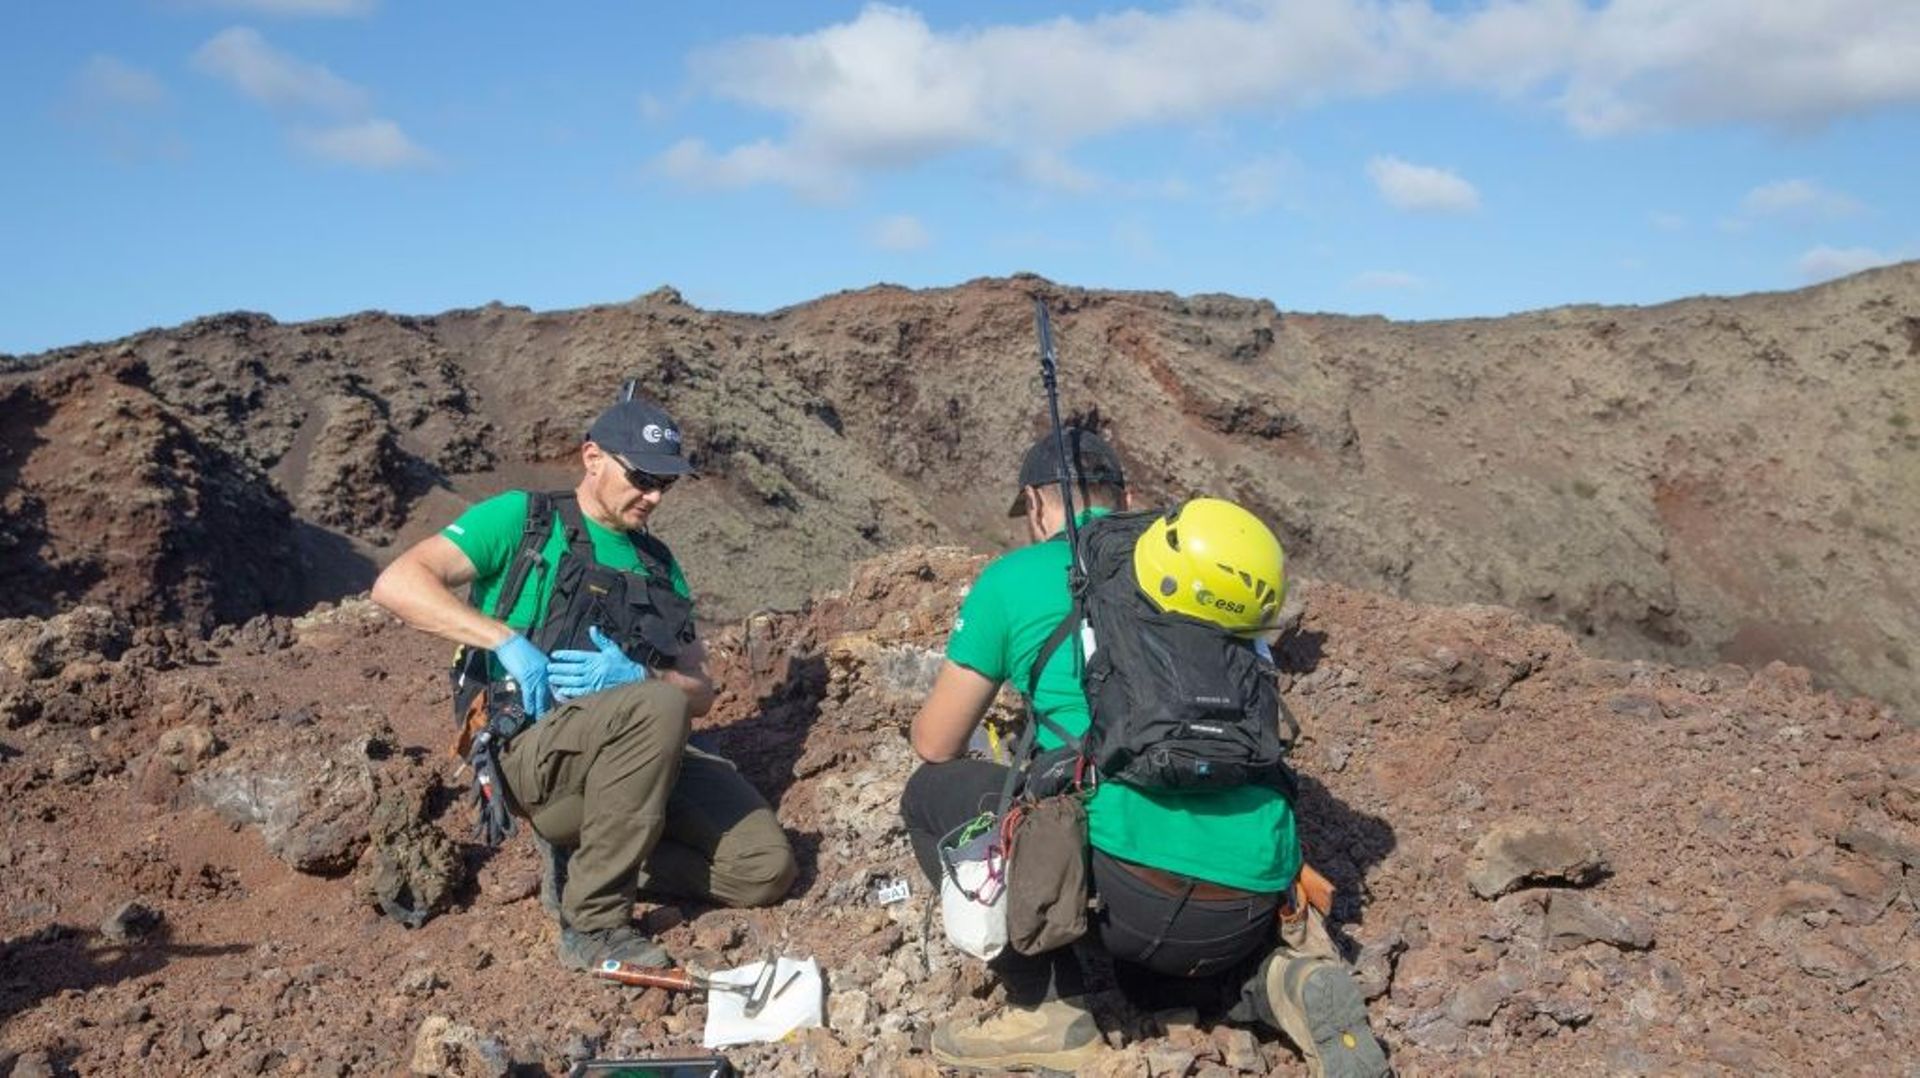 L’astronaute allemand Alexander Gerst (à gauche) prélève des échantillons de roche au sommet d’un ancien volcan au cours d’une séance d’entraînement dans le parc naturel de Los Volcanes, à Lanzarote, aux Canaries, le 10 novembre 2022.